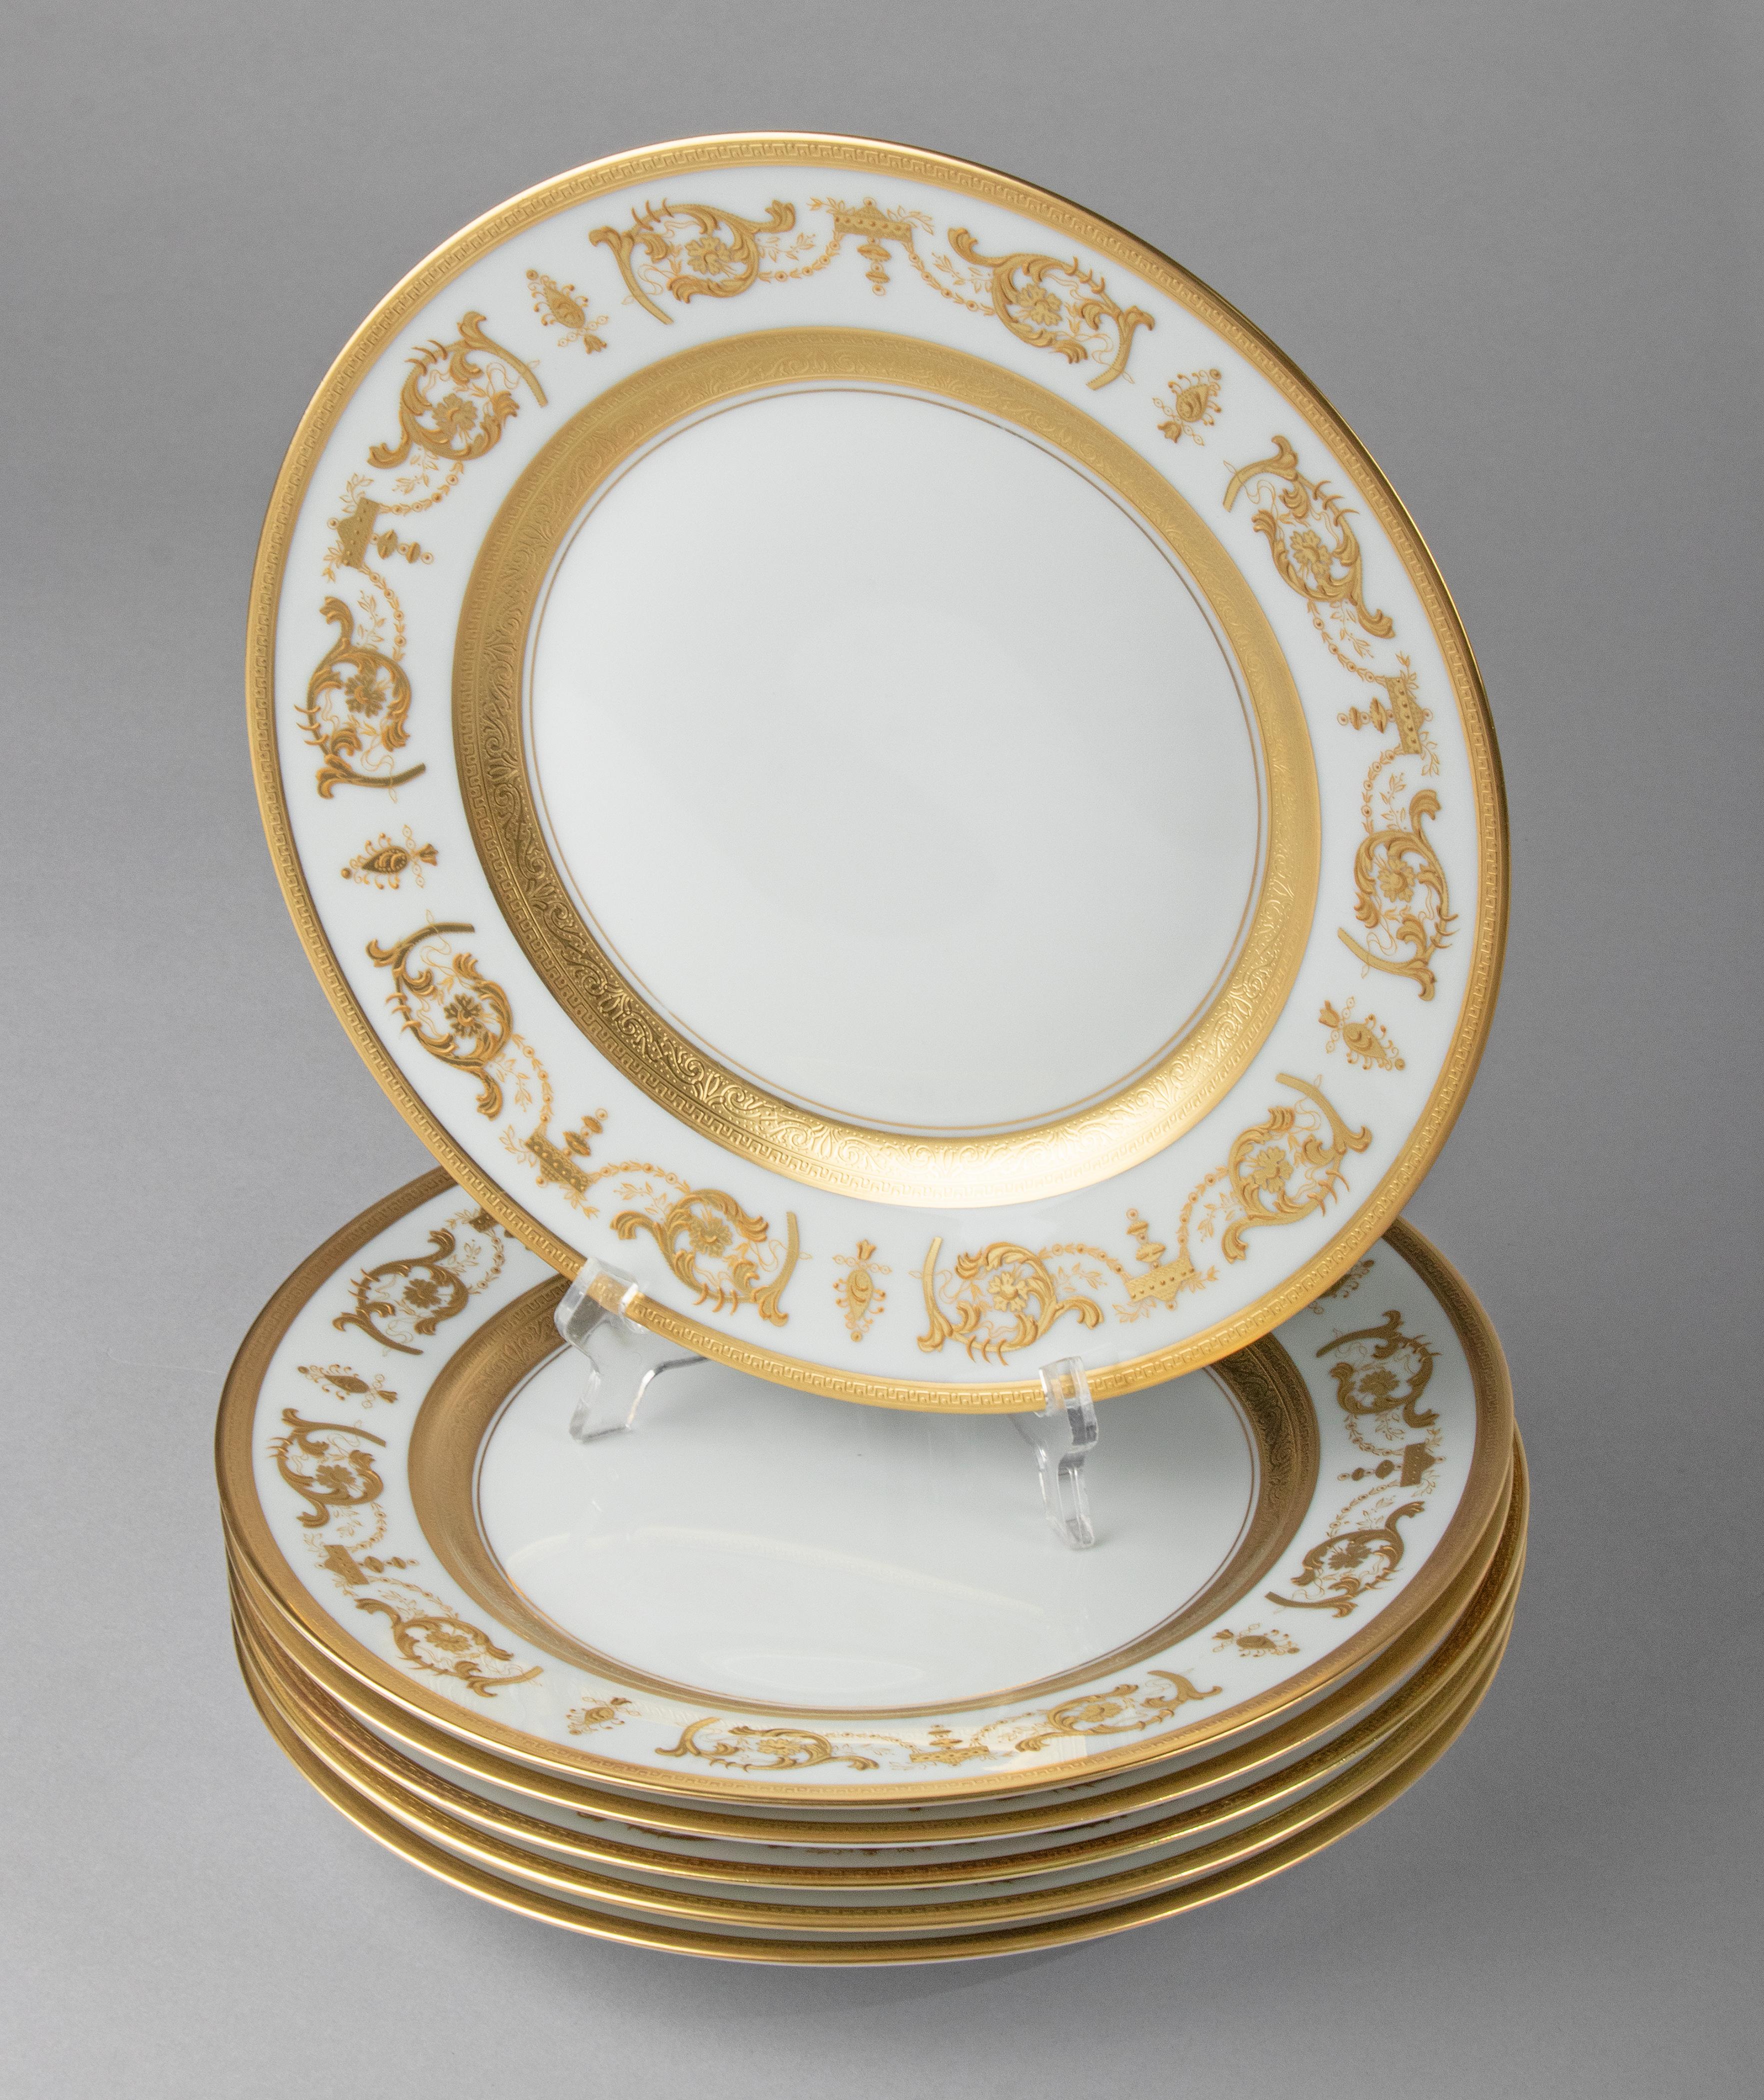 Set of 6 Porcelain Dinner Plates made by Haviland model Impérator Or 7